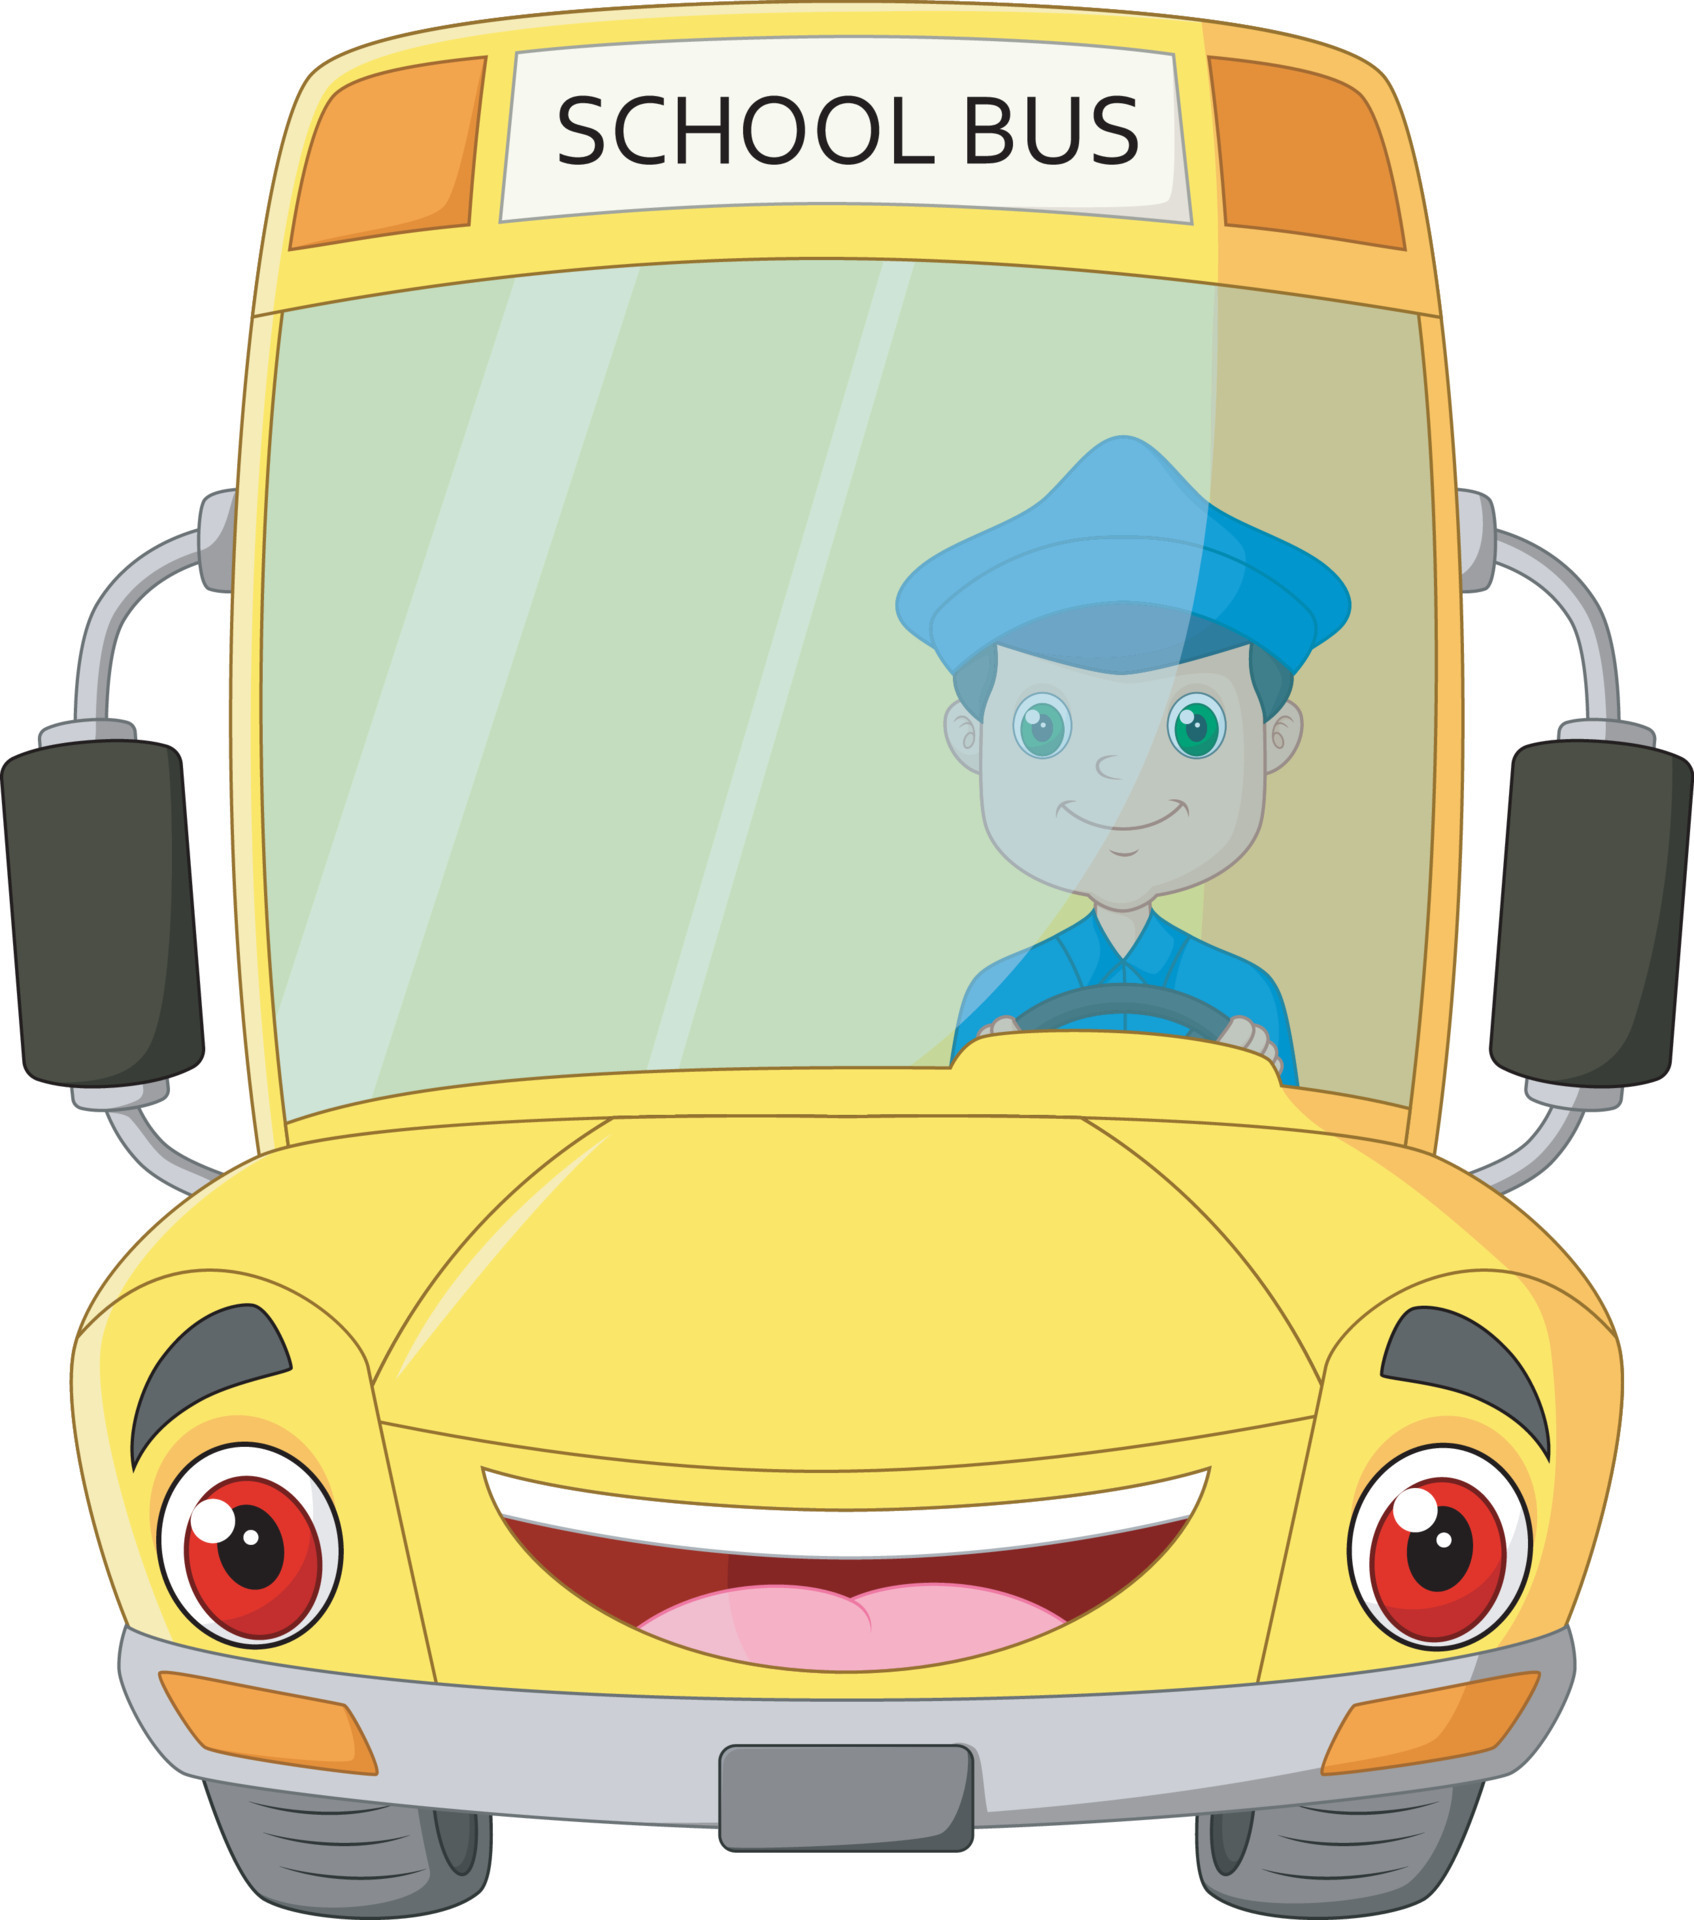 cartoon bus school with driver 8075029 Vector Art at Vecteezy